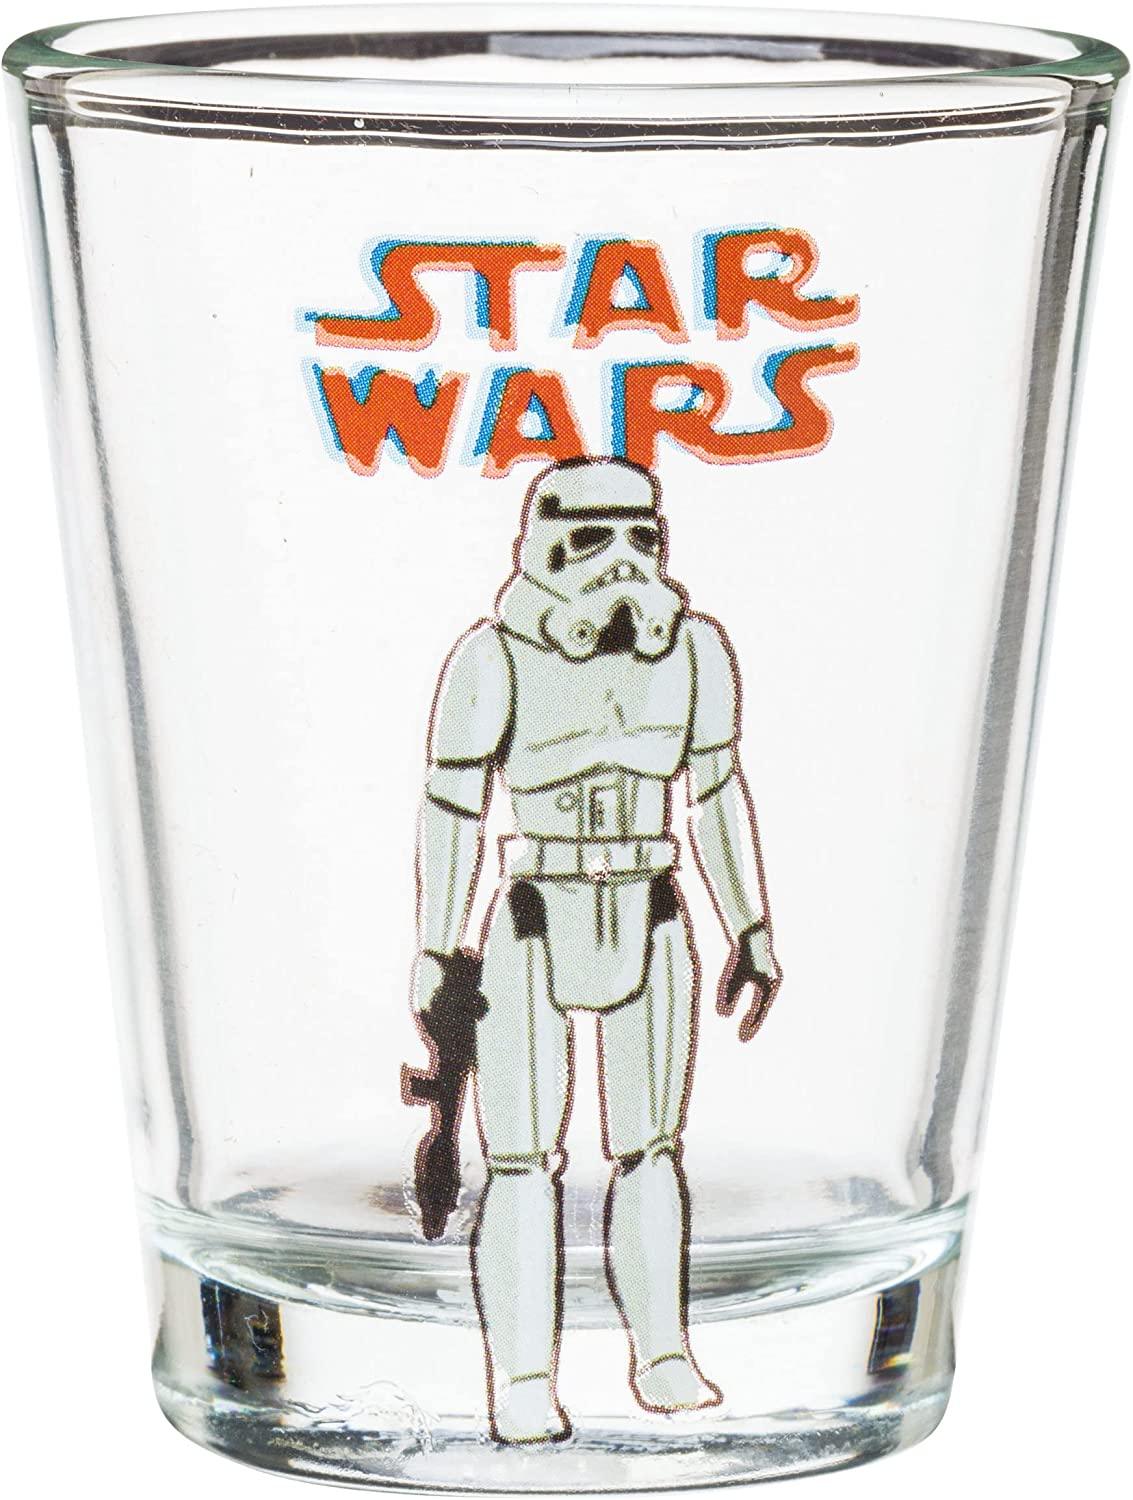 Star Wars Shot Glasses